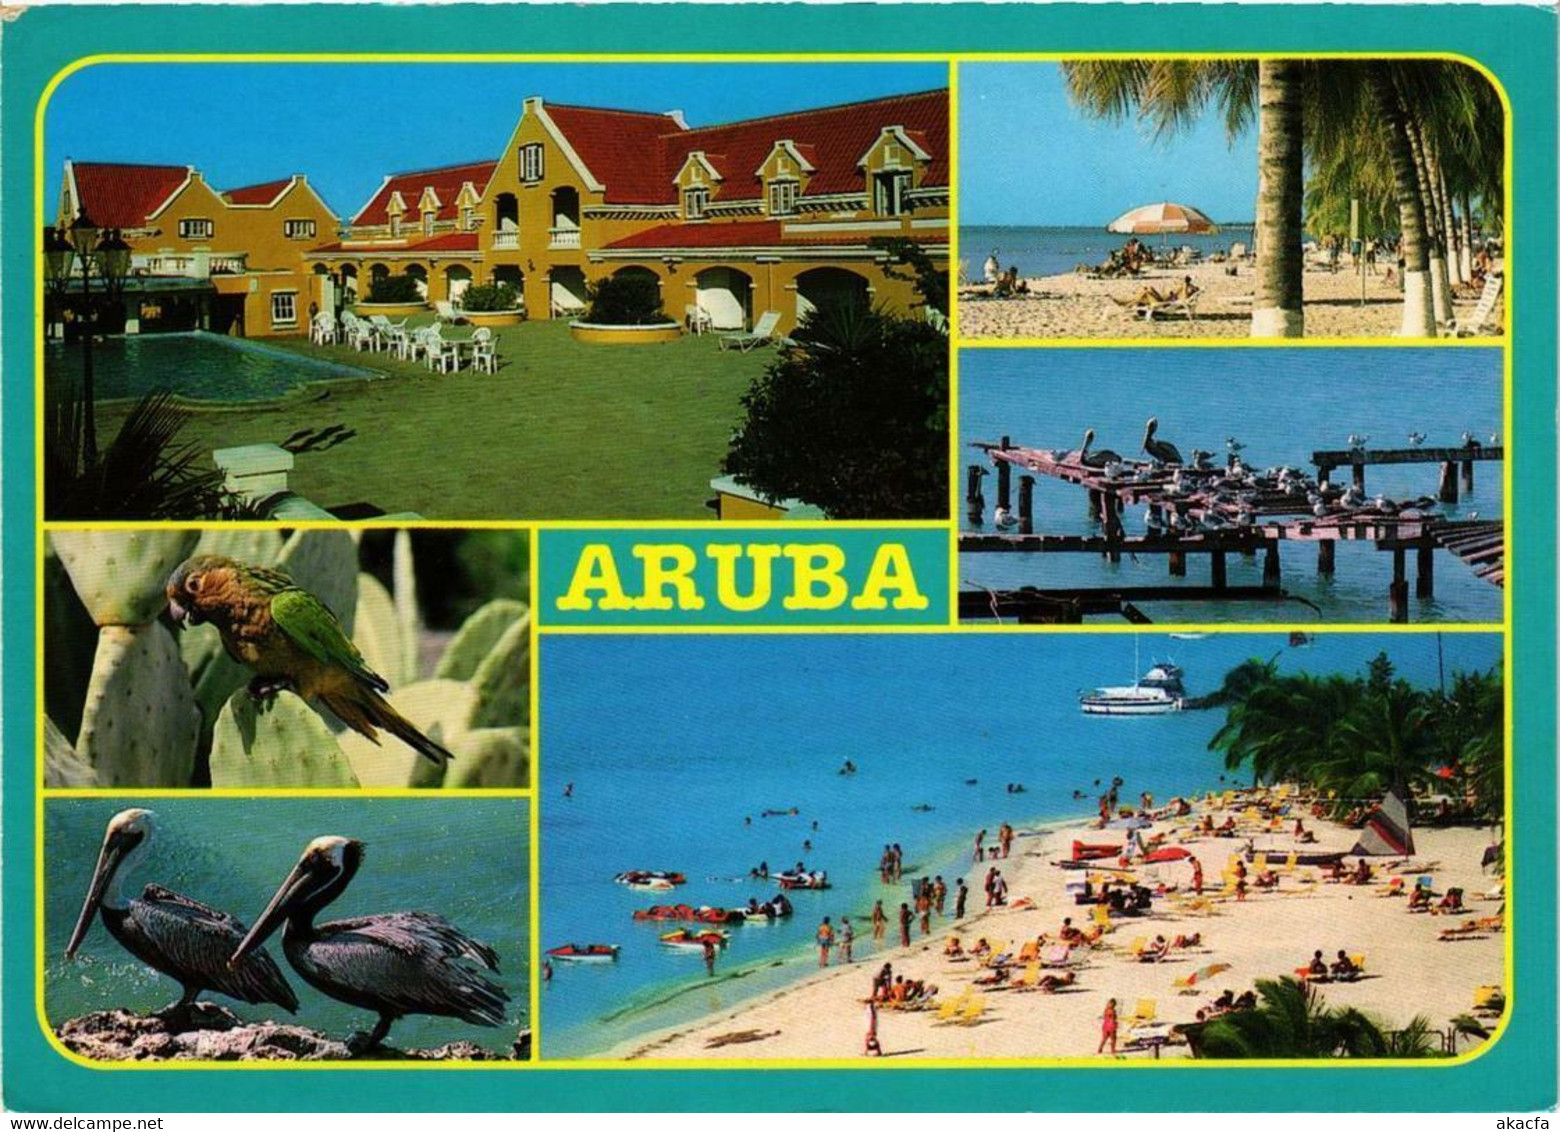 CPM AK A View Selection Of The Island ARUBA (750321) - Aruba